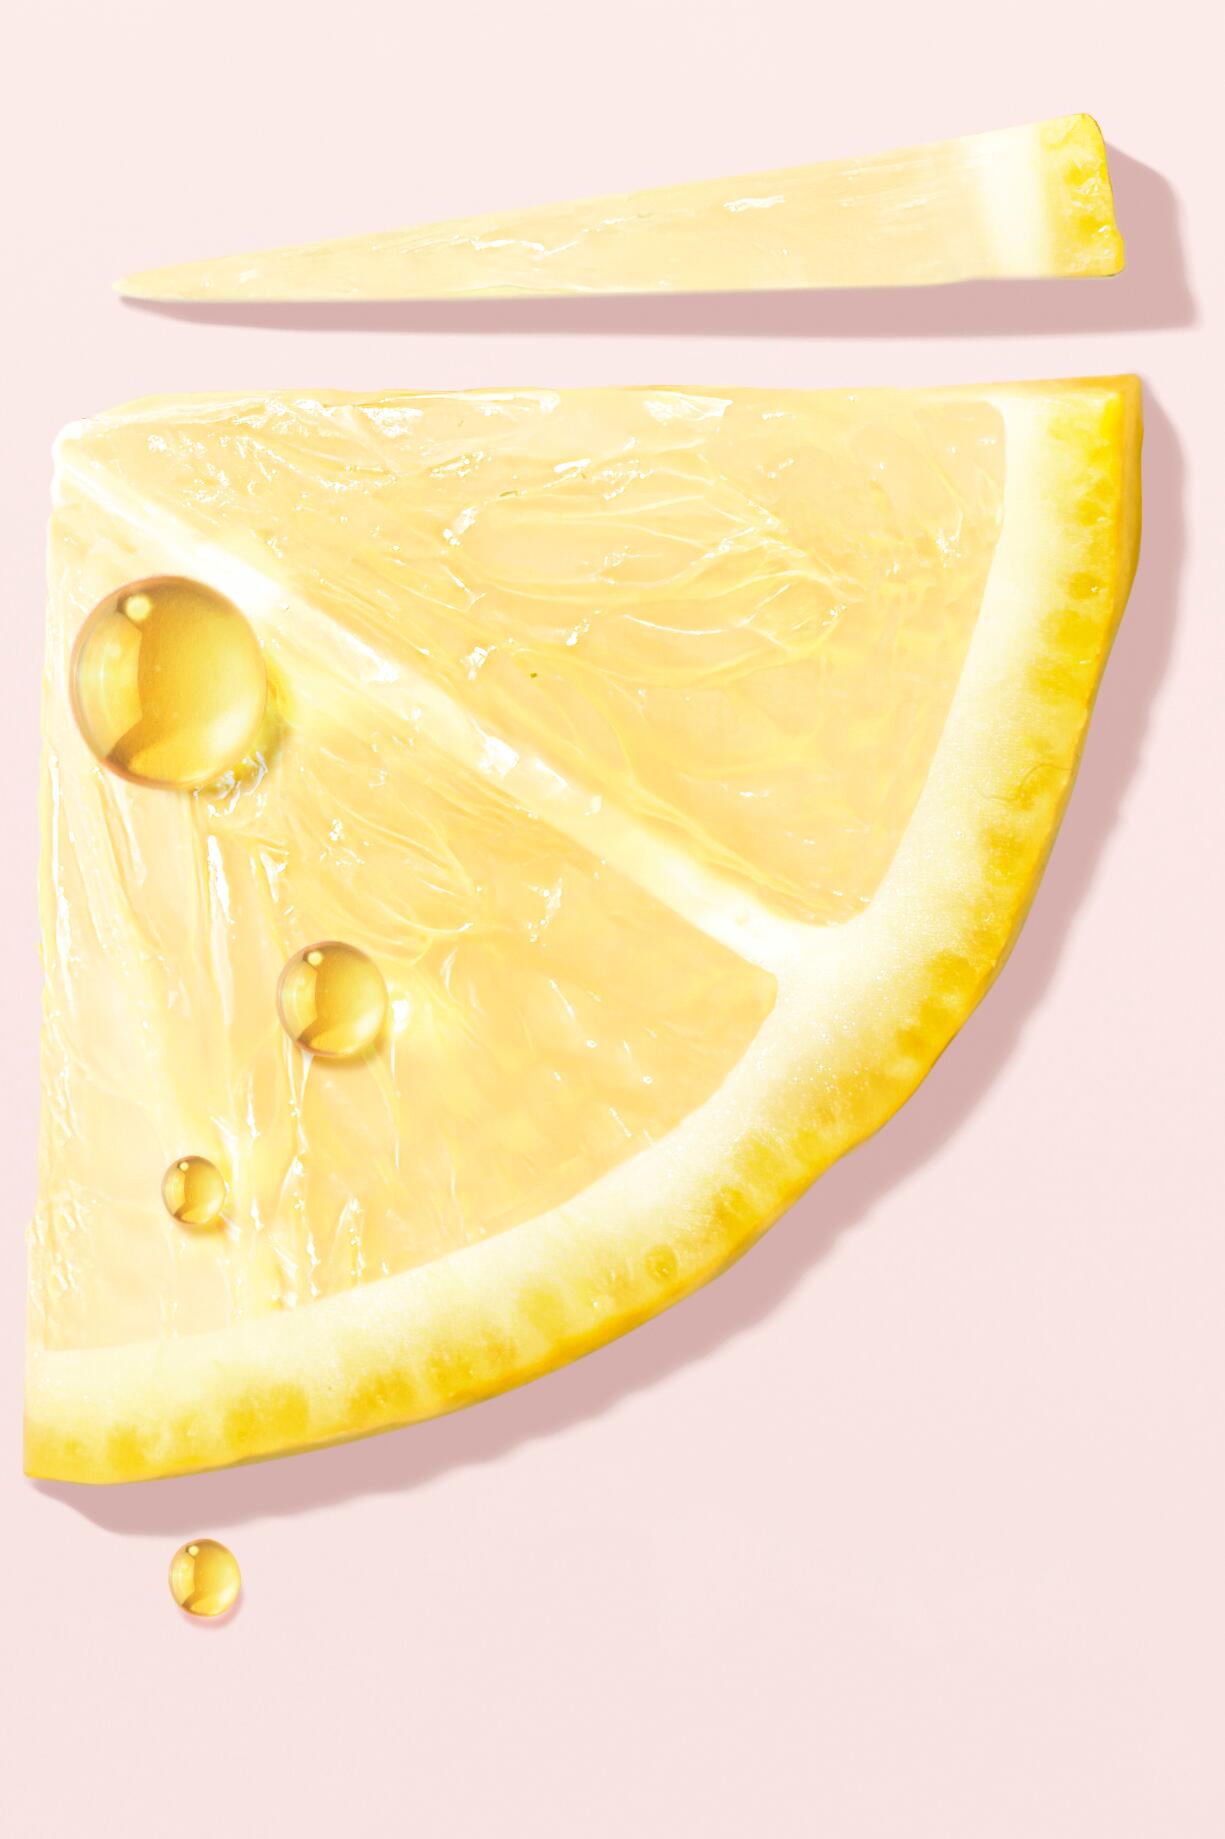 L'huile essentielle de citron et ses bienfaits